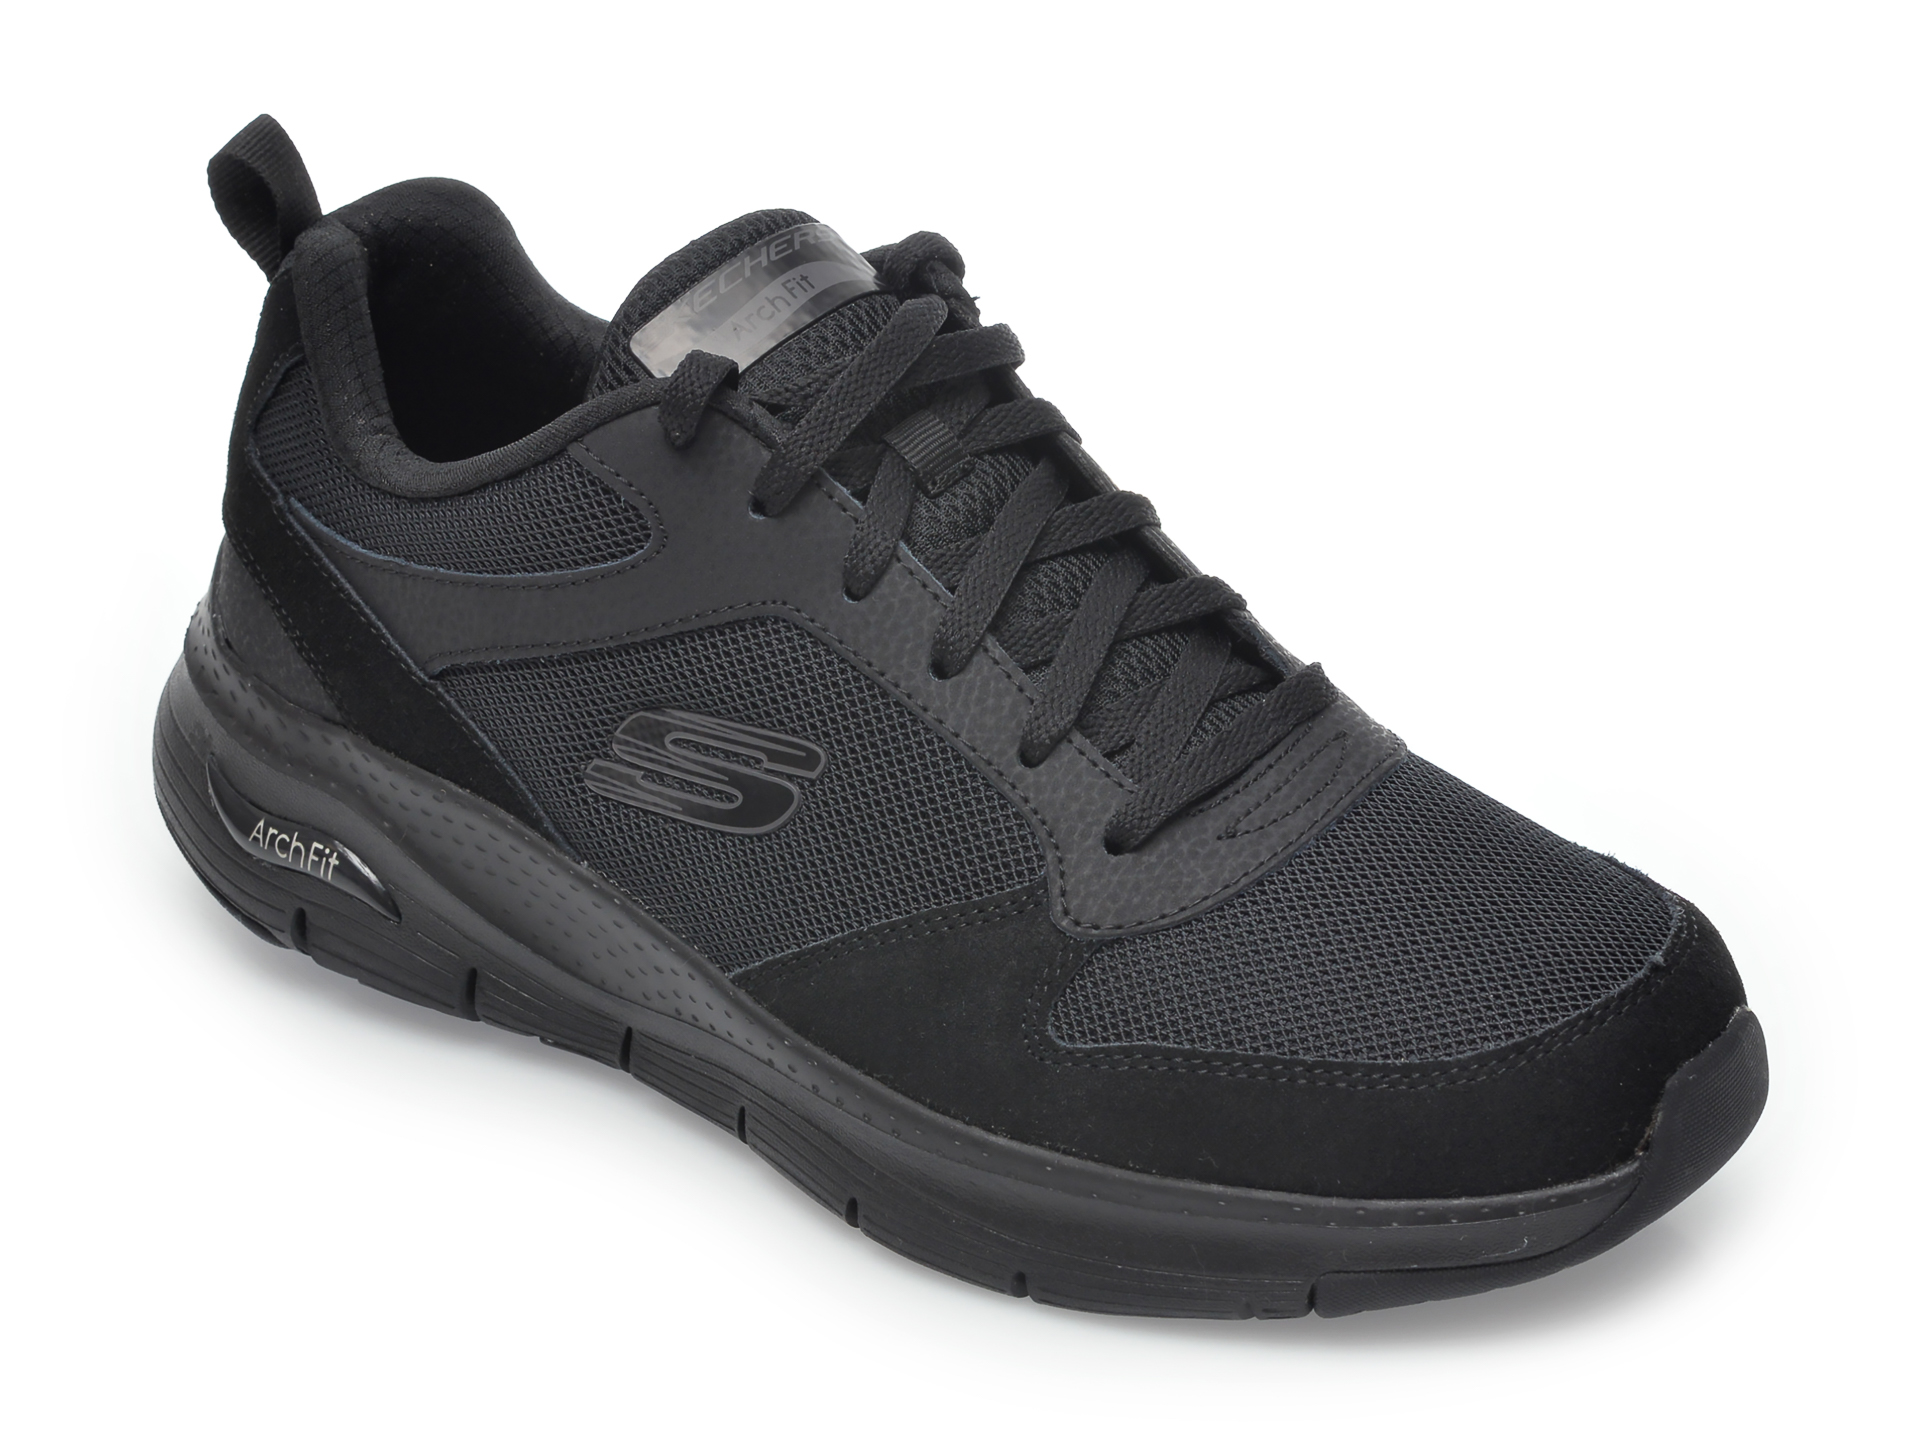 Pantofi sport SKECHERS negri, Arch Fit Servitica, din material textil si piele naturala